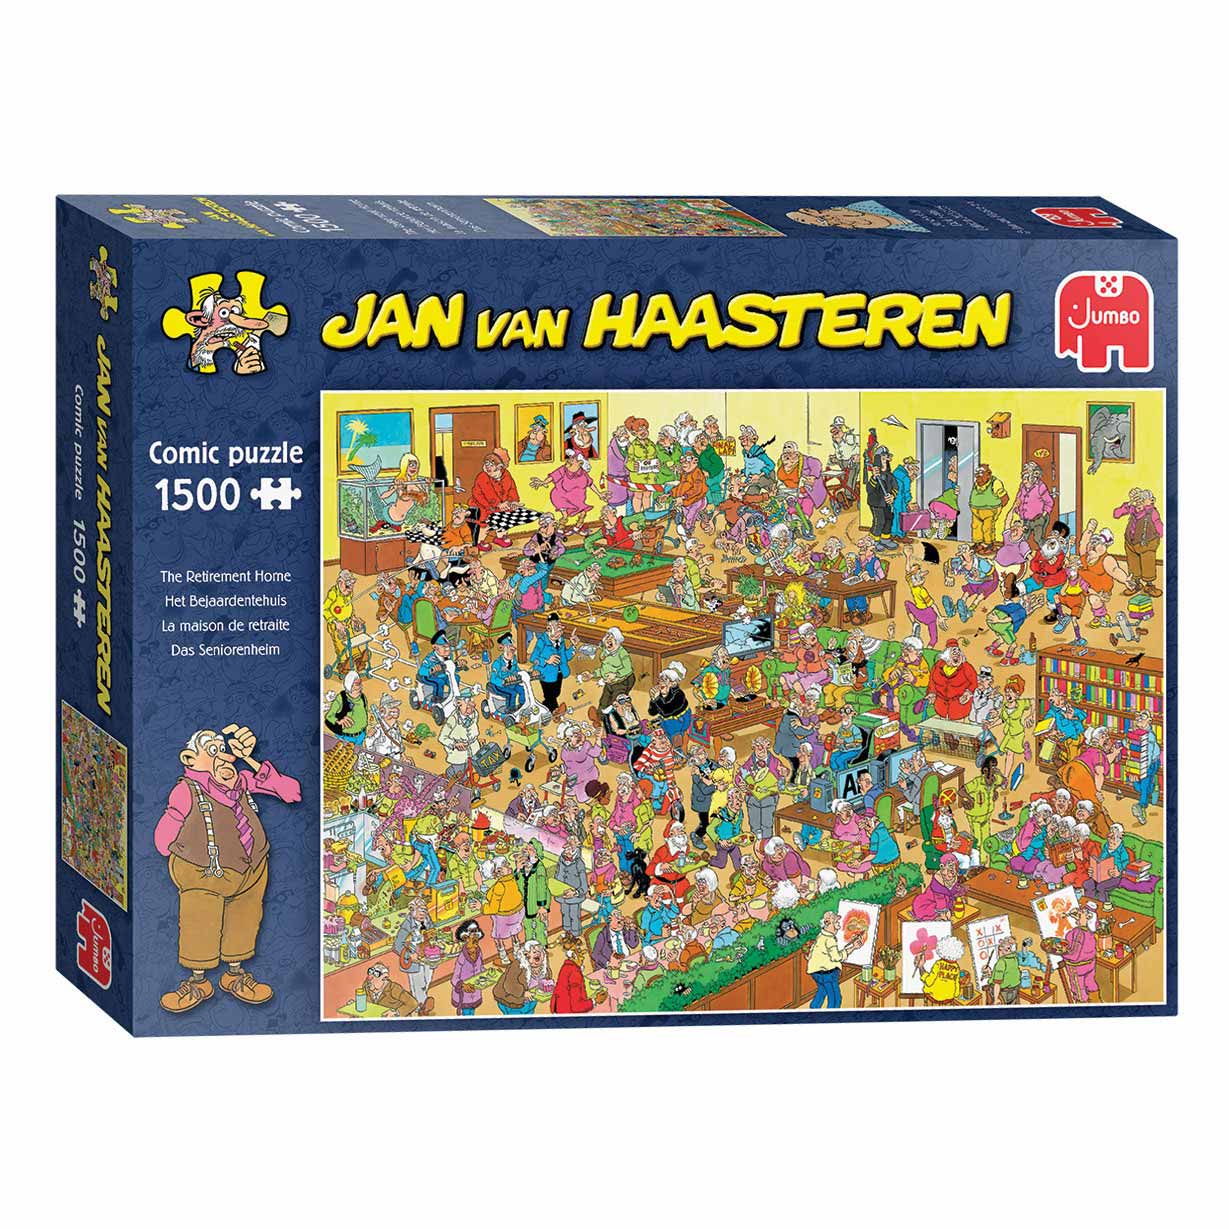 Puzzle Jan van Haasteren - La maison de retraite, 1500 pcs.